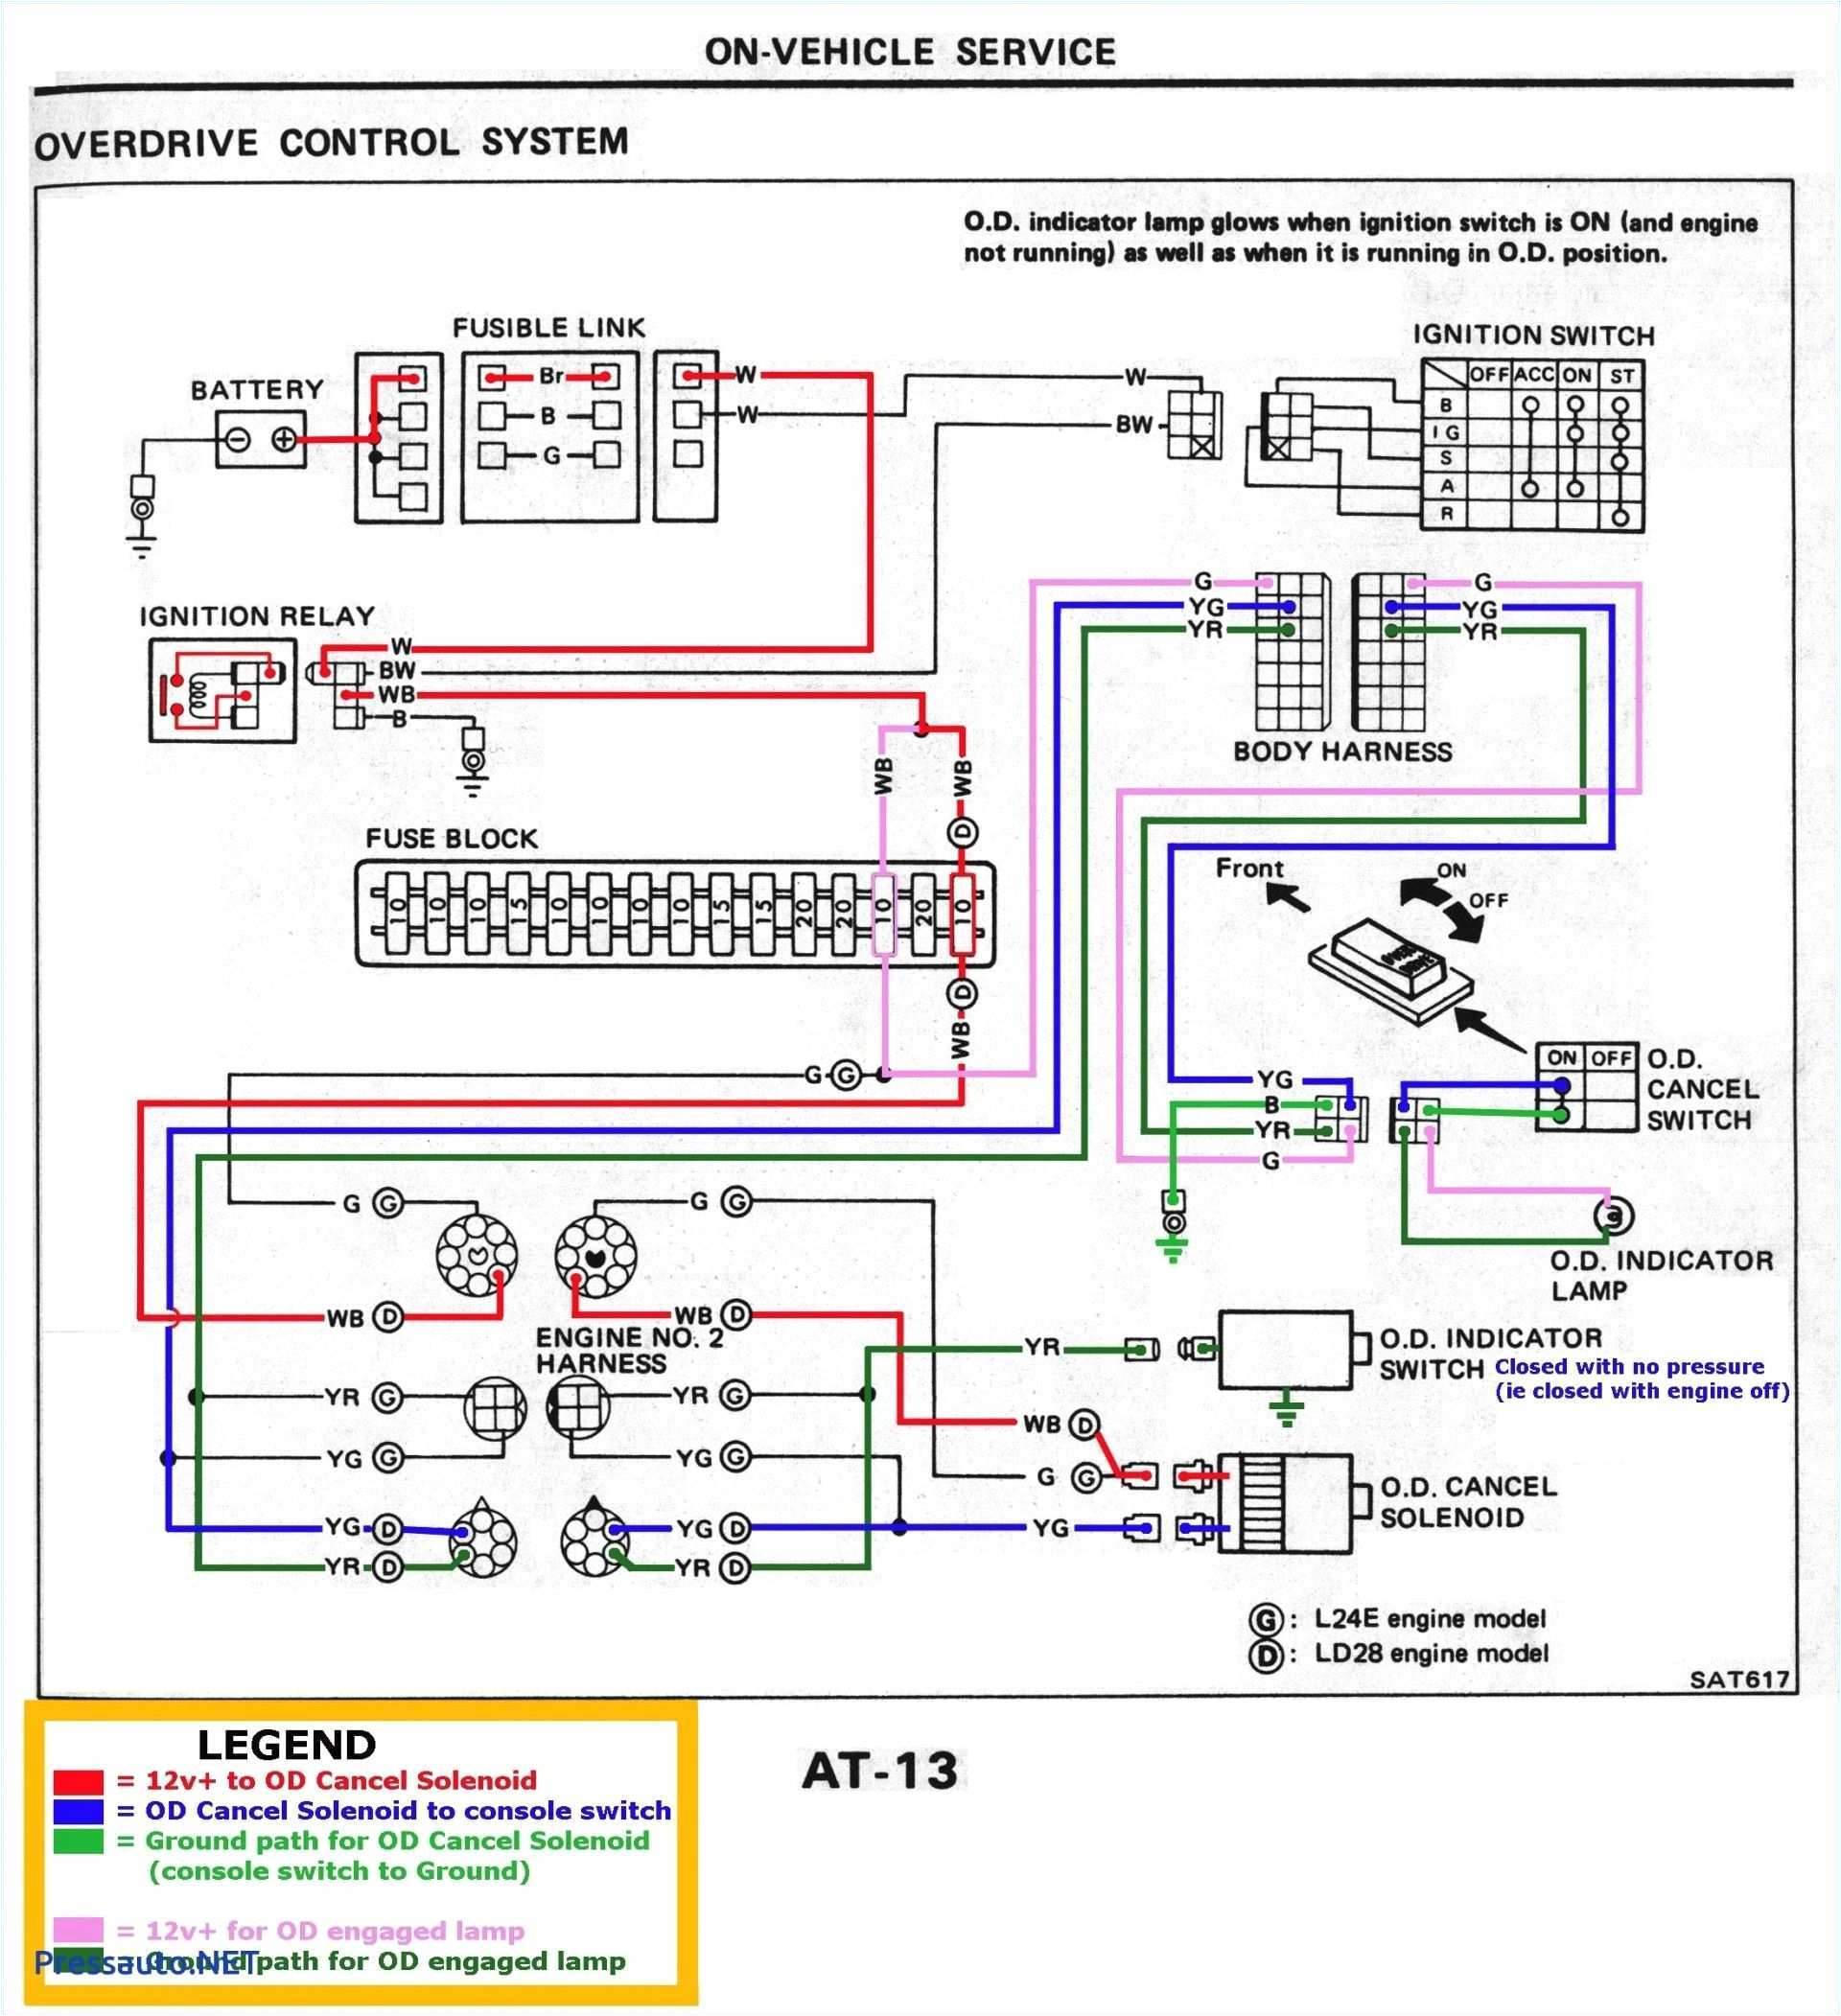 schematic wiring diagram ach 800 wiring diagram centre ach wiring diagram model 8 wiring diagram technicschematic